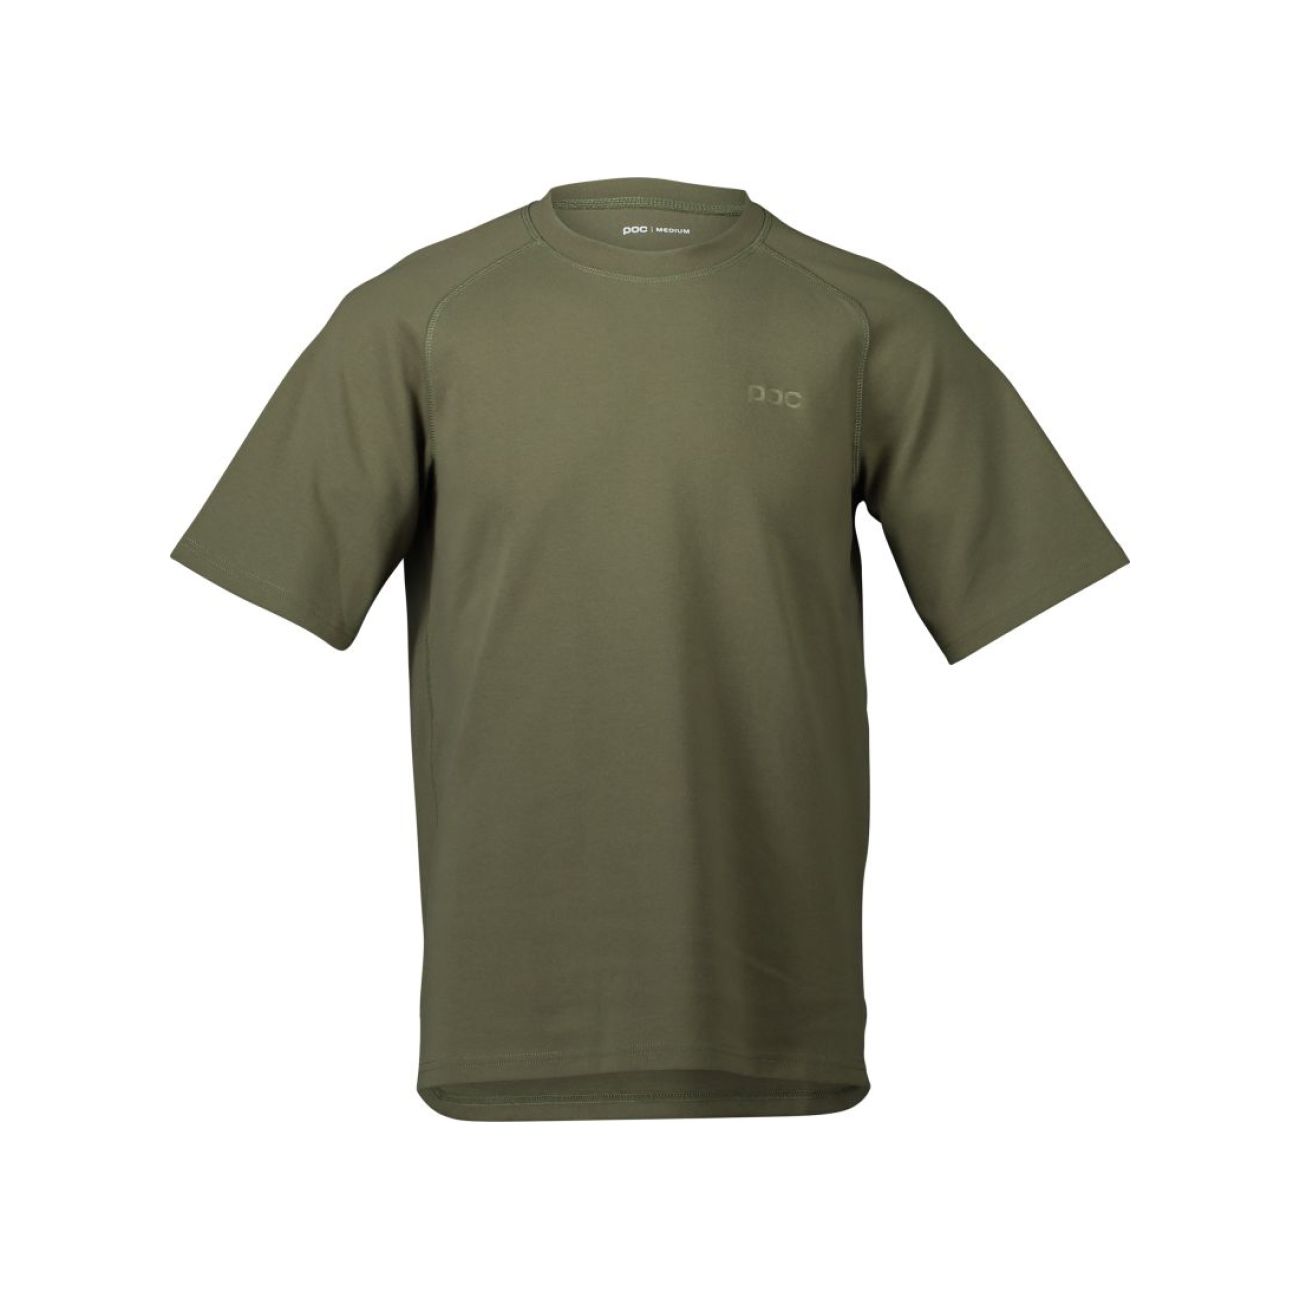 POC Kolarska Koszulka Z Krótkim Rękawem - POISE TEE - Zielony